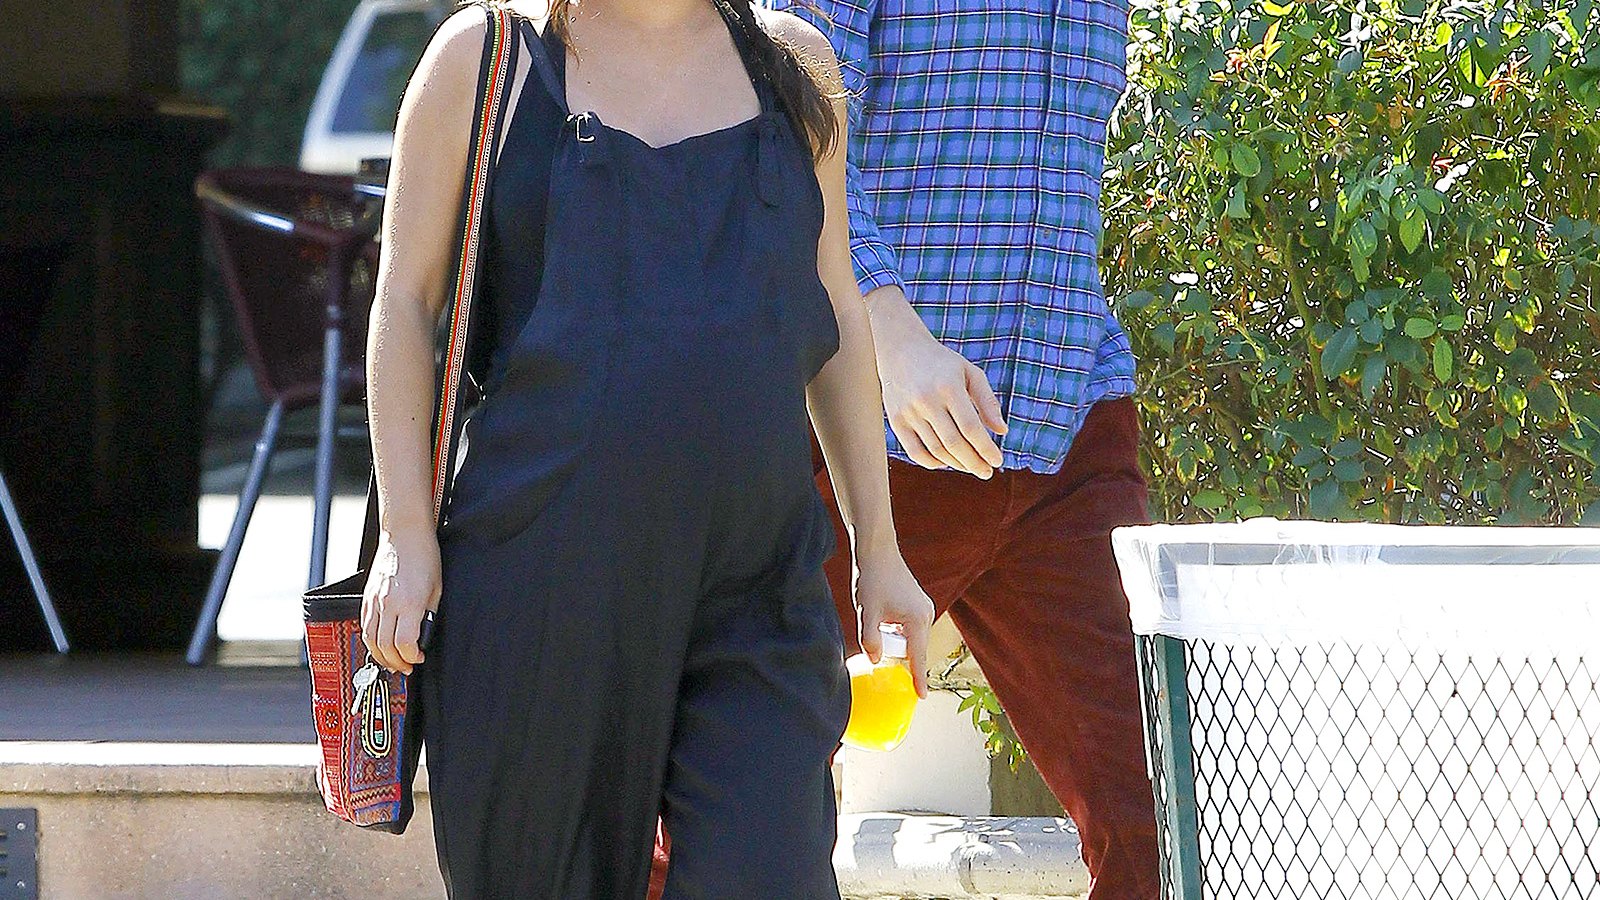 Rachel Bilson and Hayden Christensen stop by Lowe's in Los Angeles